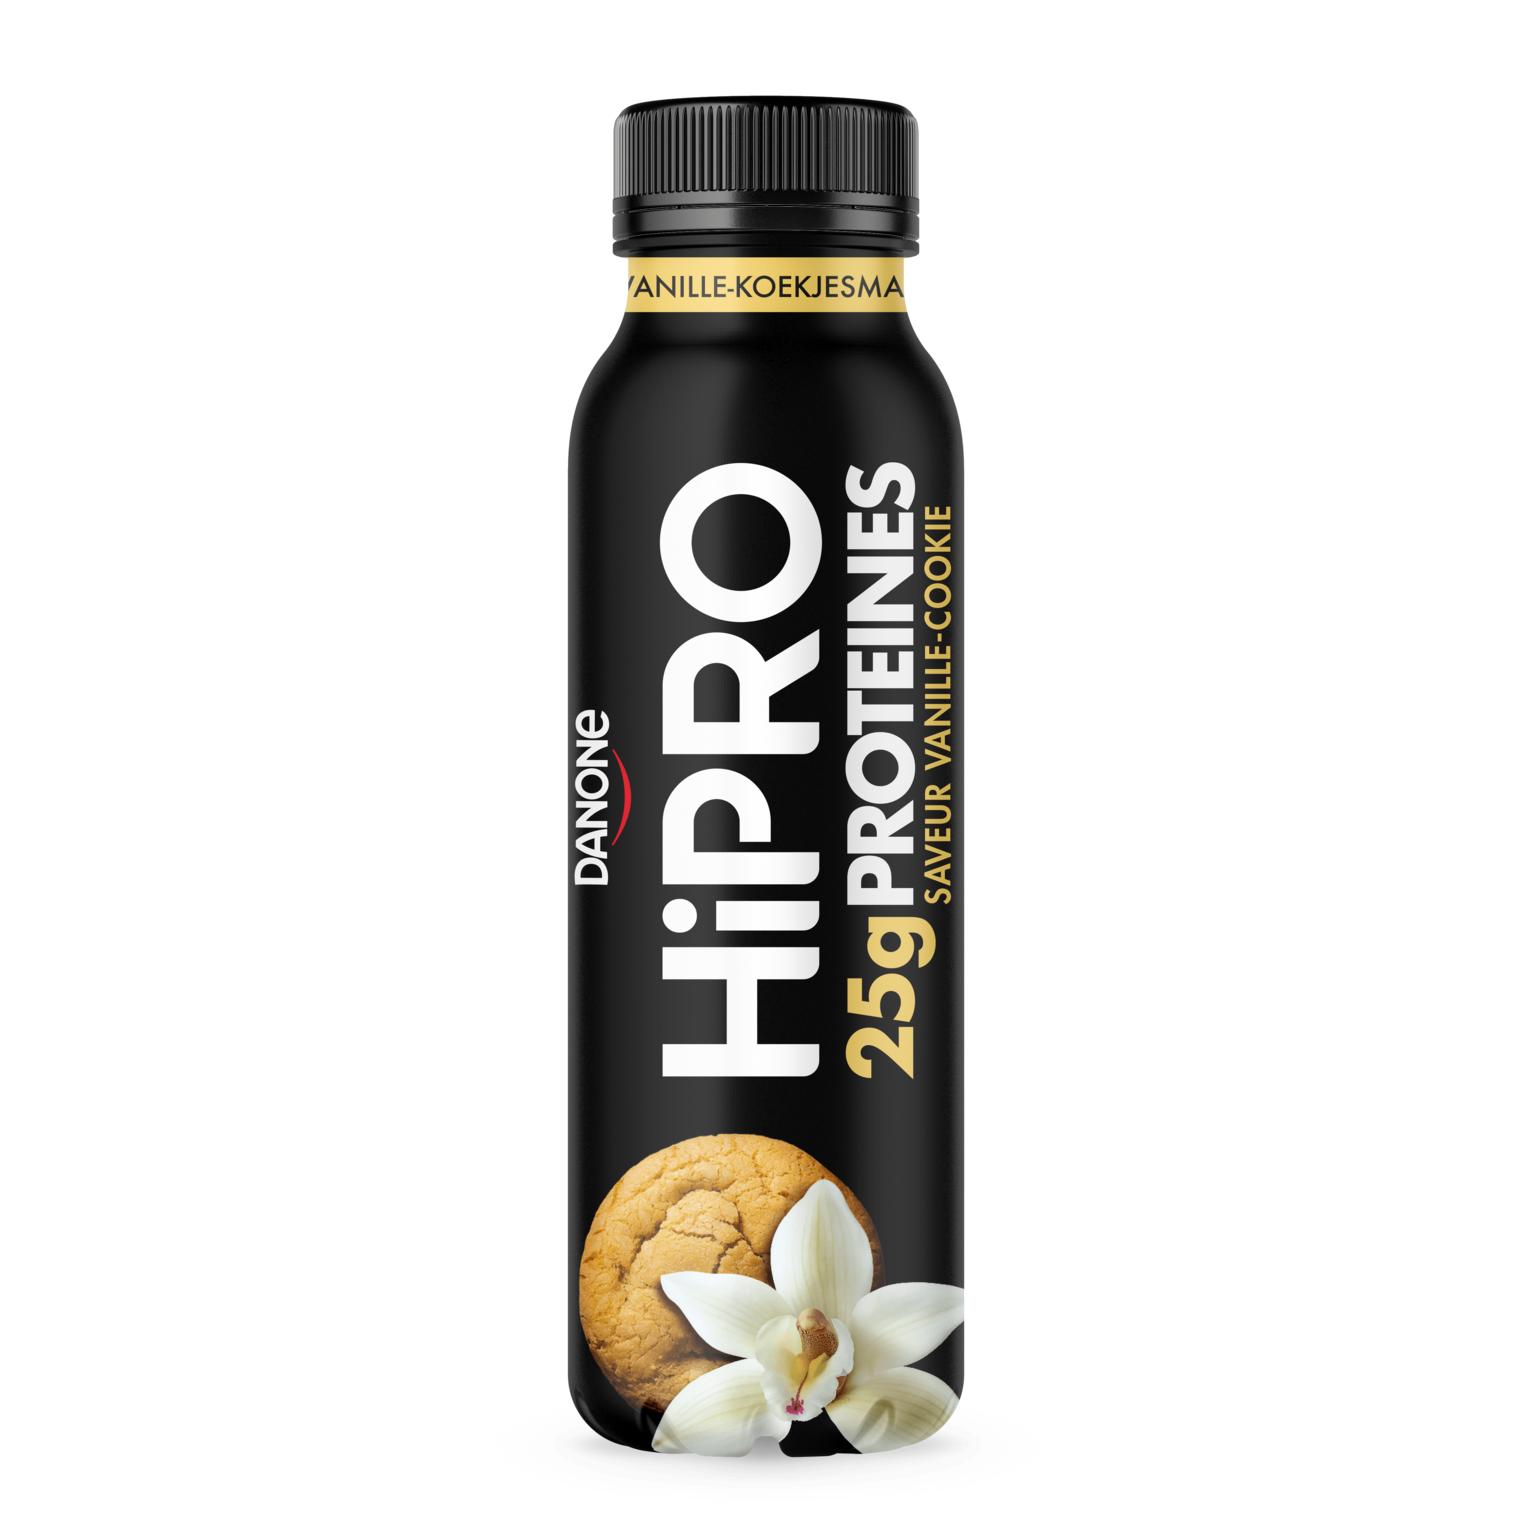 Spécialité laitière à boire hyper protéinée HiPRO Saveur Vanille-Cookie